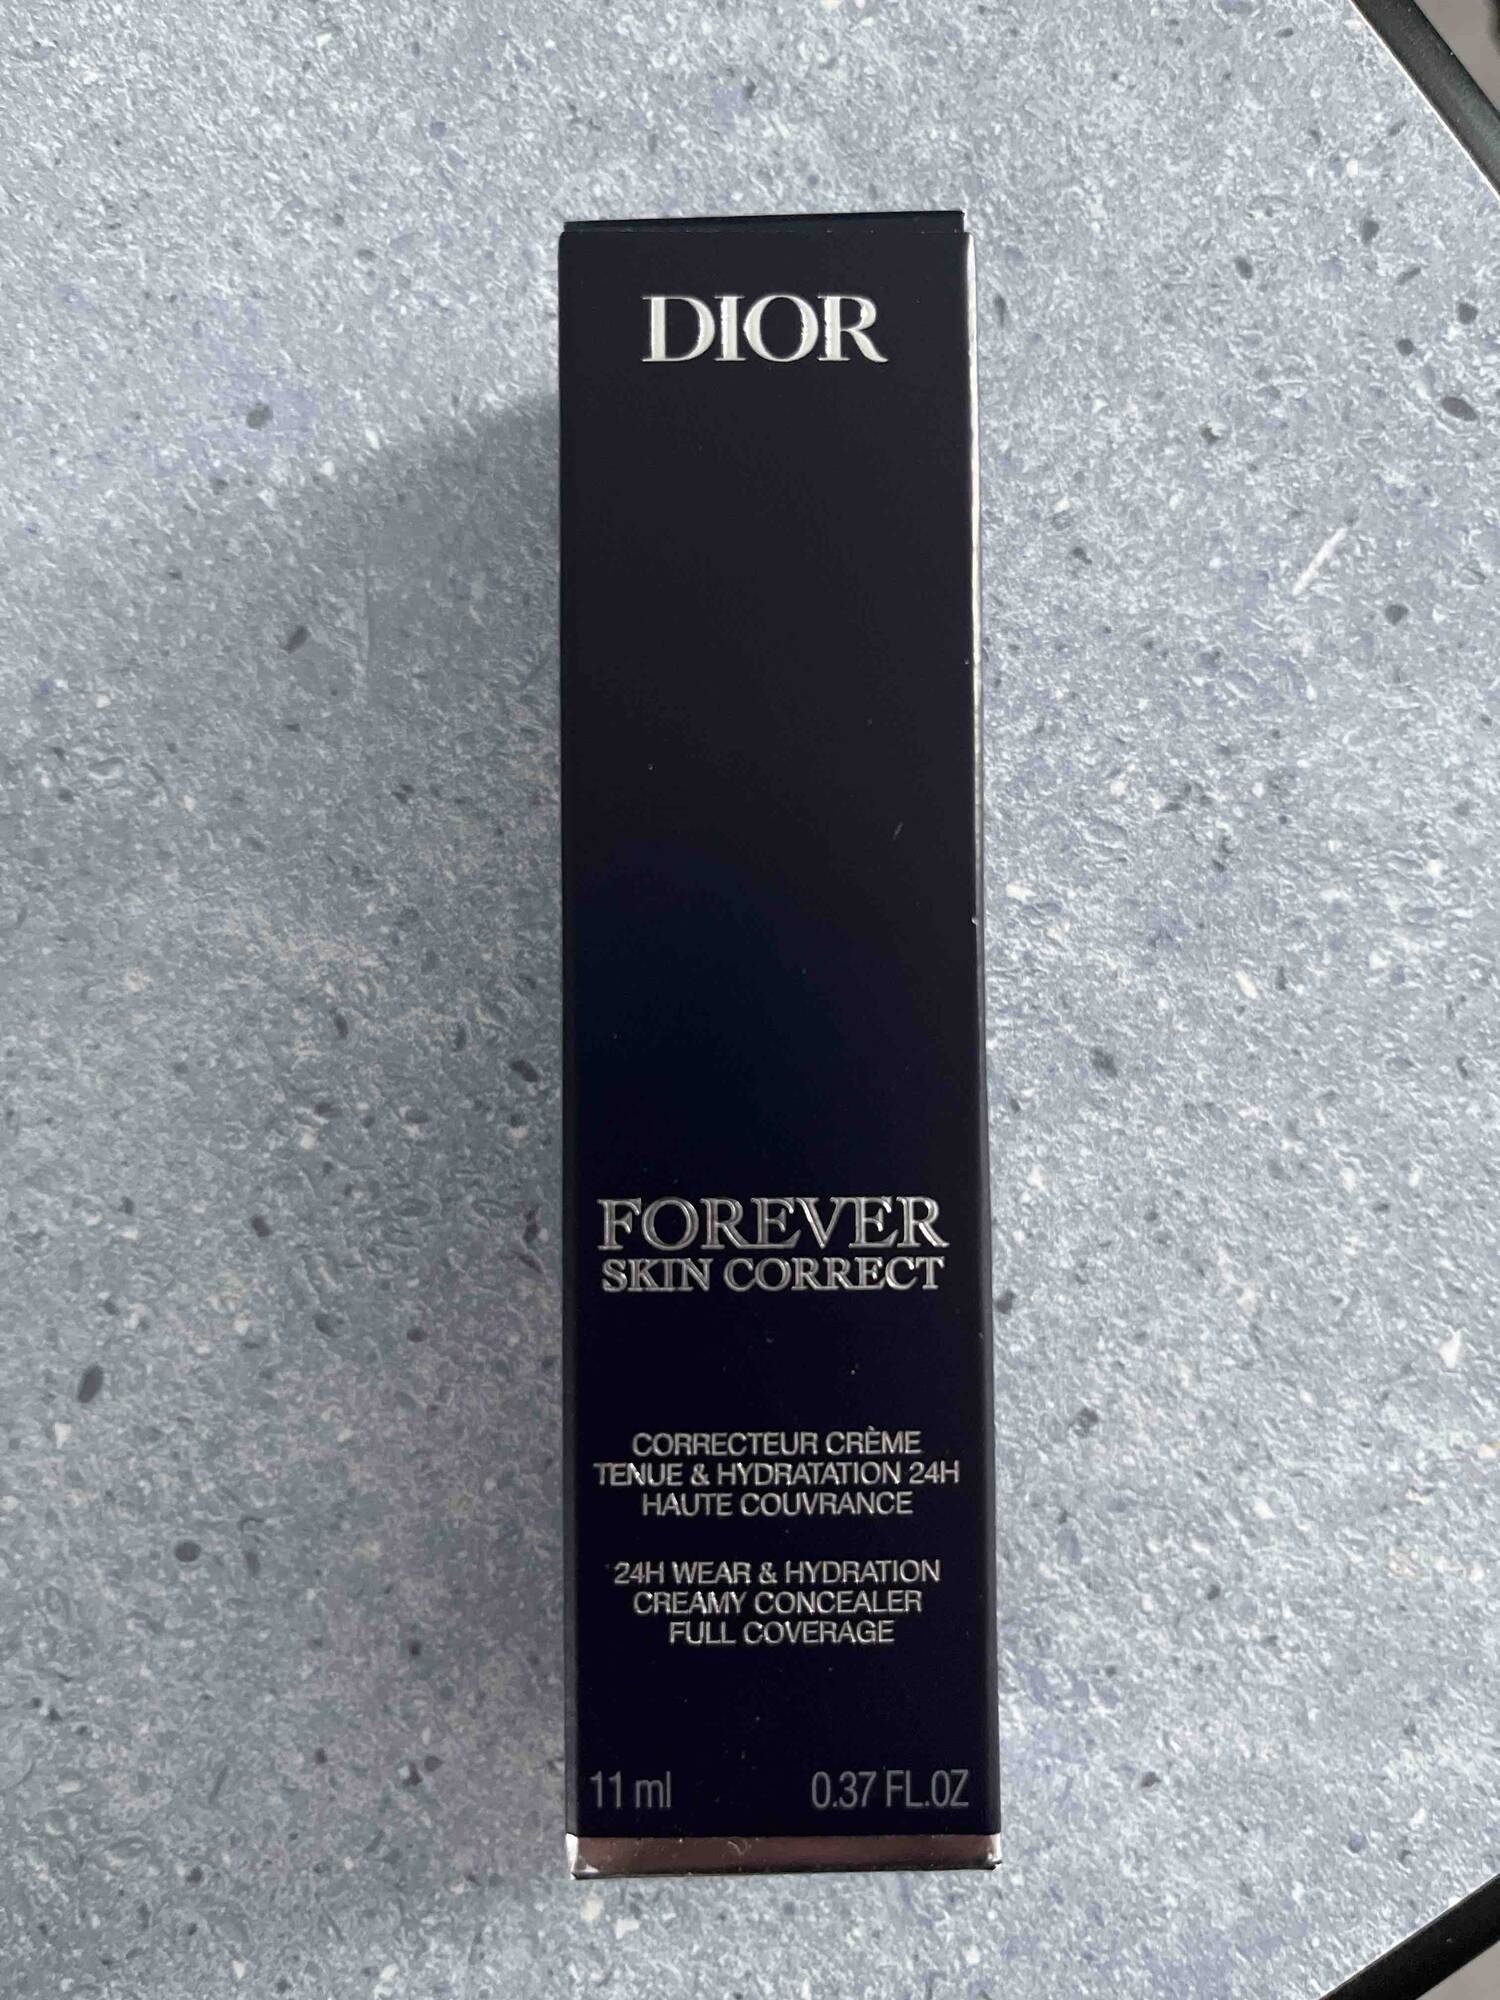 DIOR - Forever skin correct - Correcteur crème